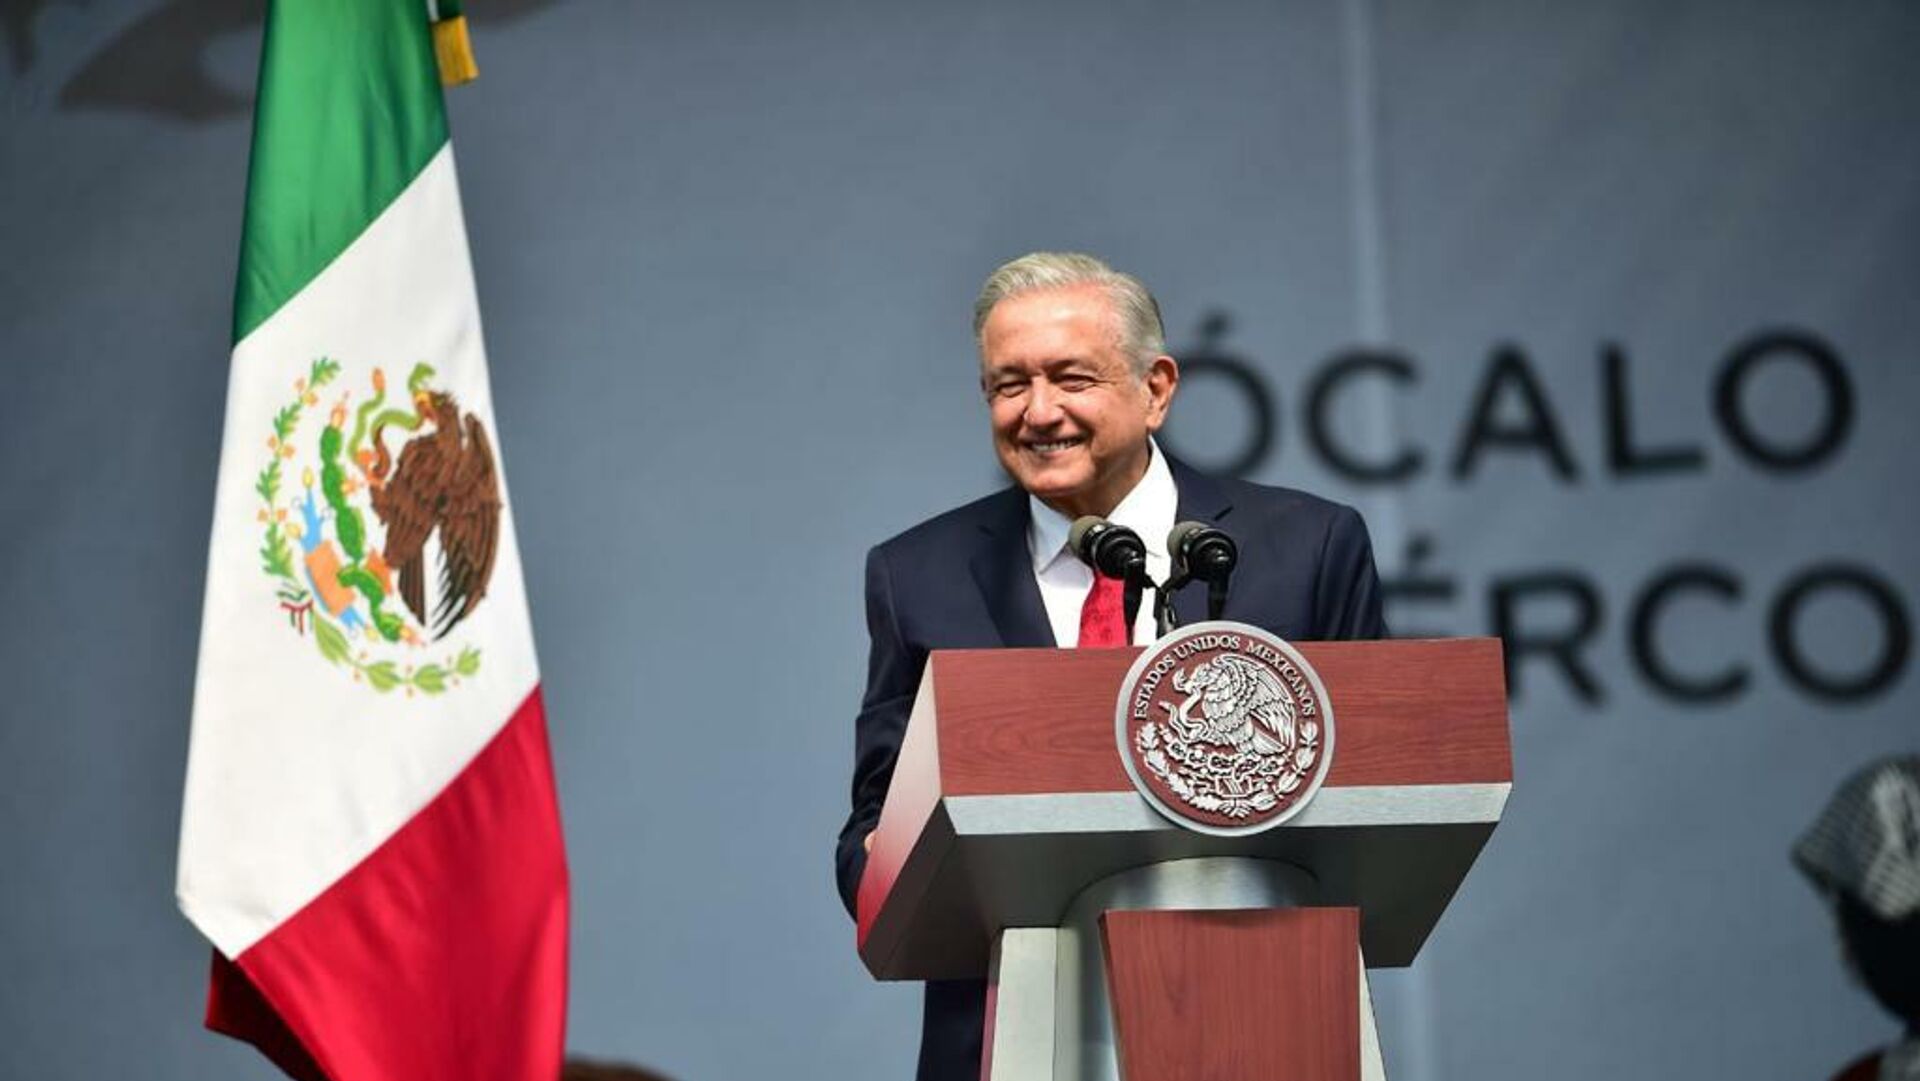 Andrés Manuel López Obrador, presidente de México - Sputnik Mundo, 1920, 02.12.2021